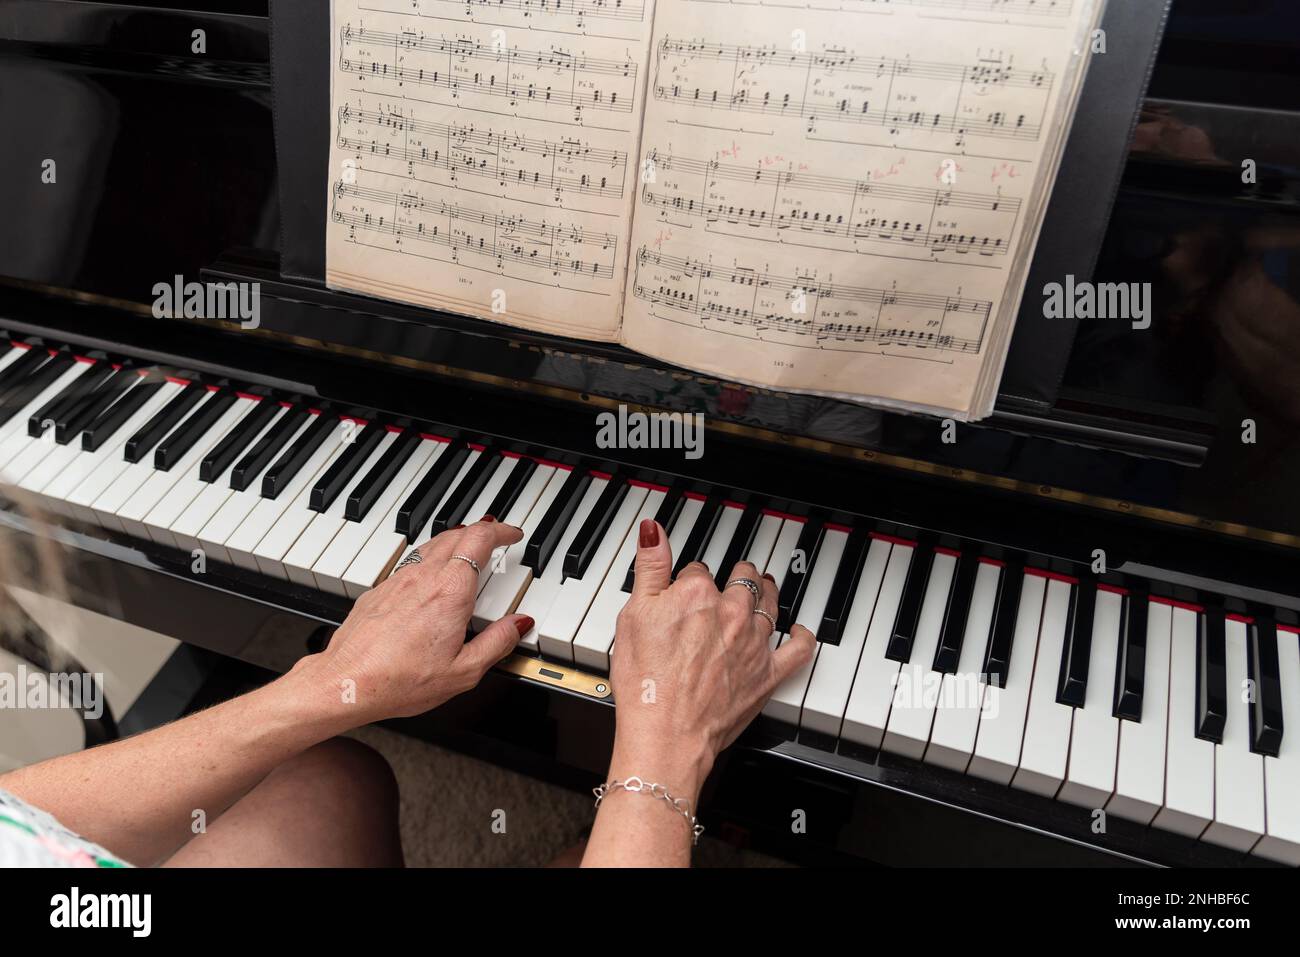 Ein talentierter Pianist spielt romantische Musik auf dem Klavier. Musik  und Perfektion Stockfotografie - Alamy